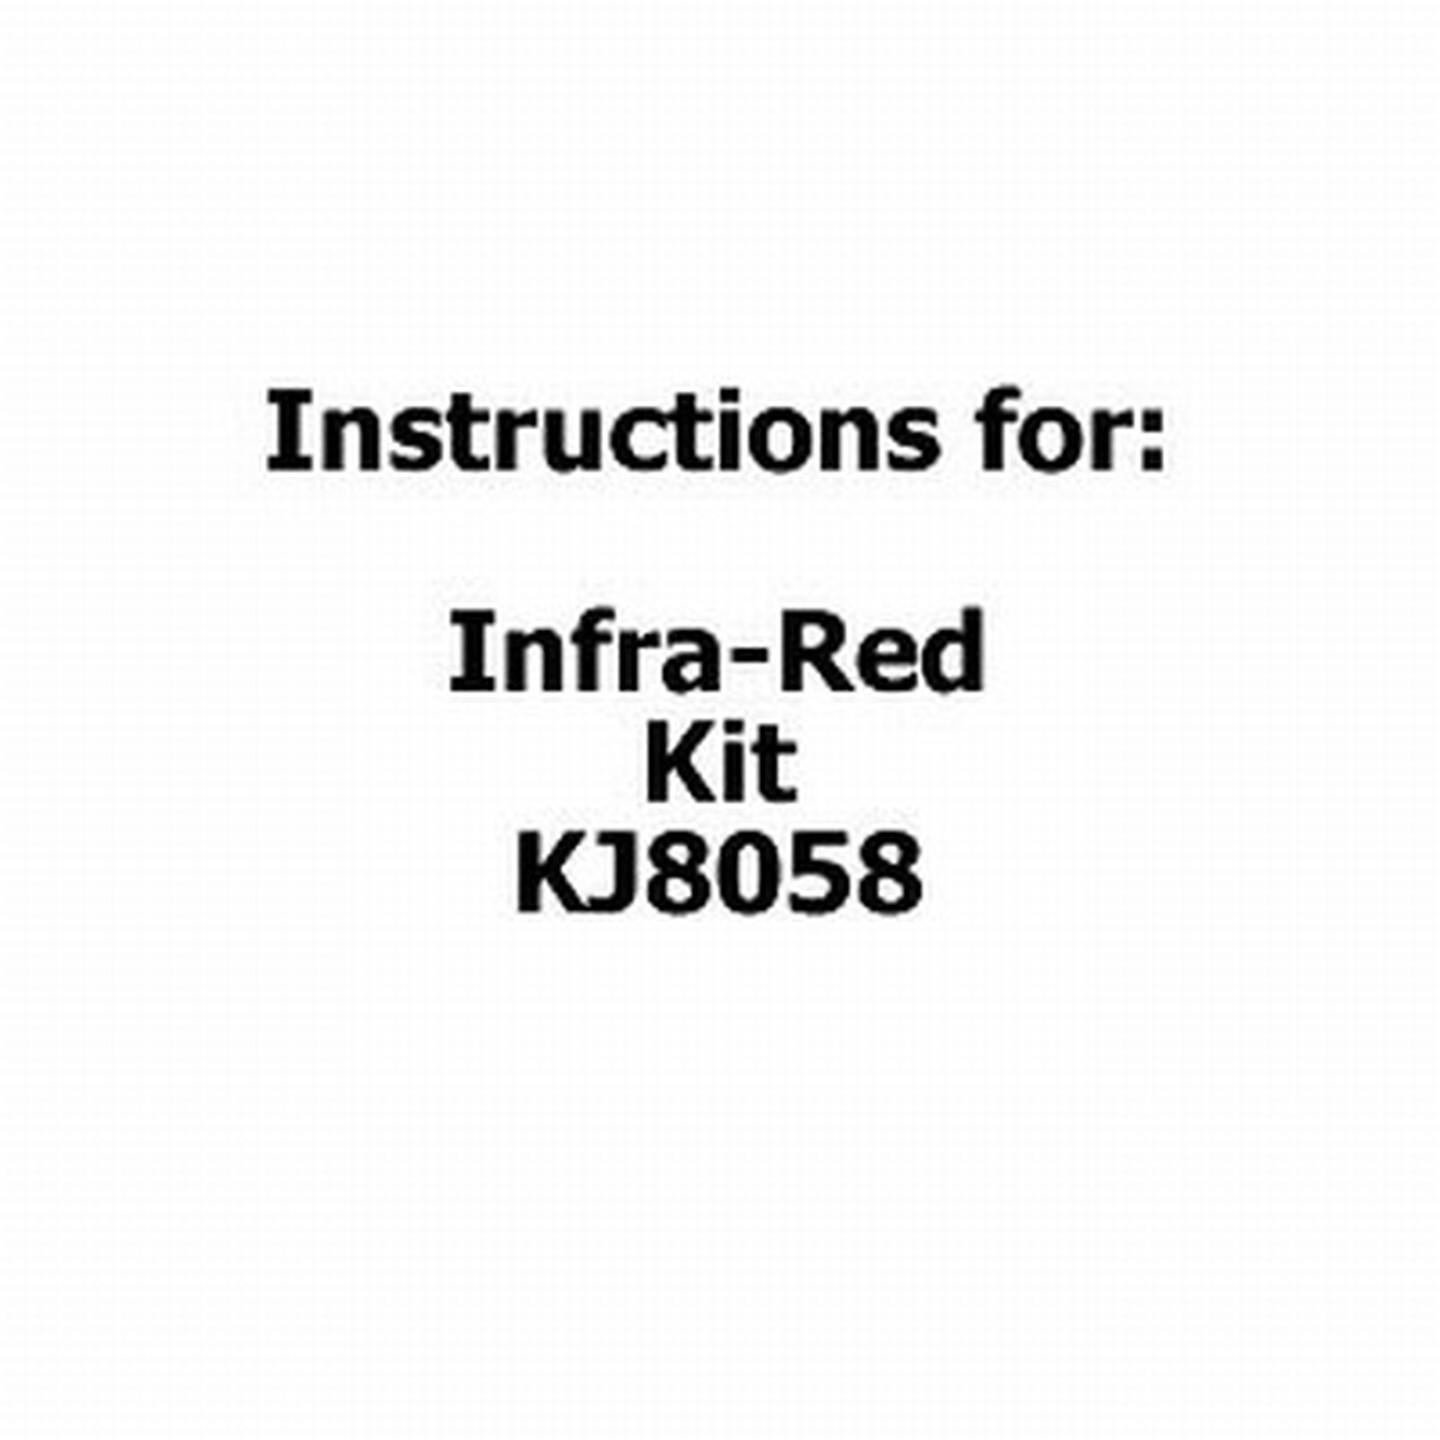 Instructions For Infrared Kit KJ8058